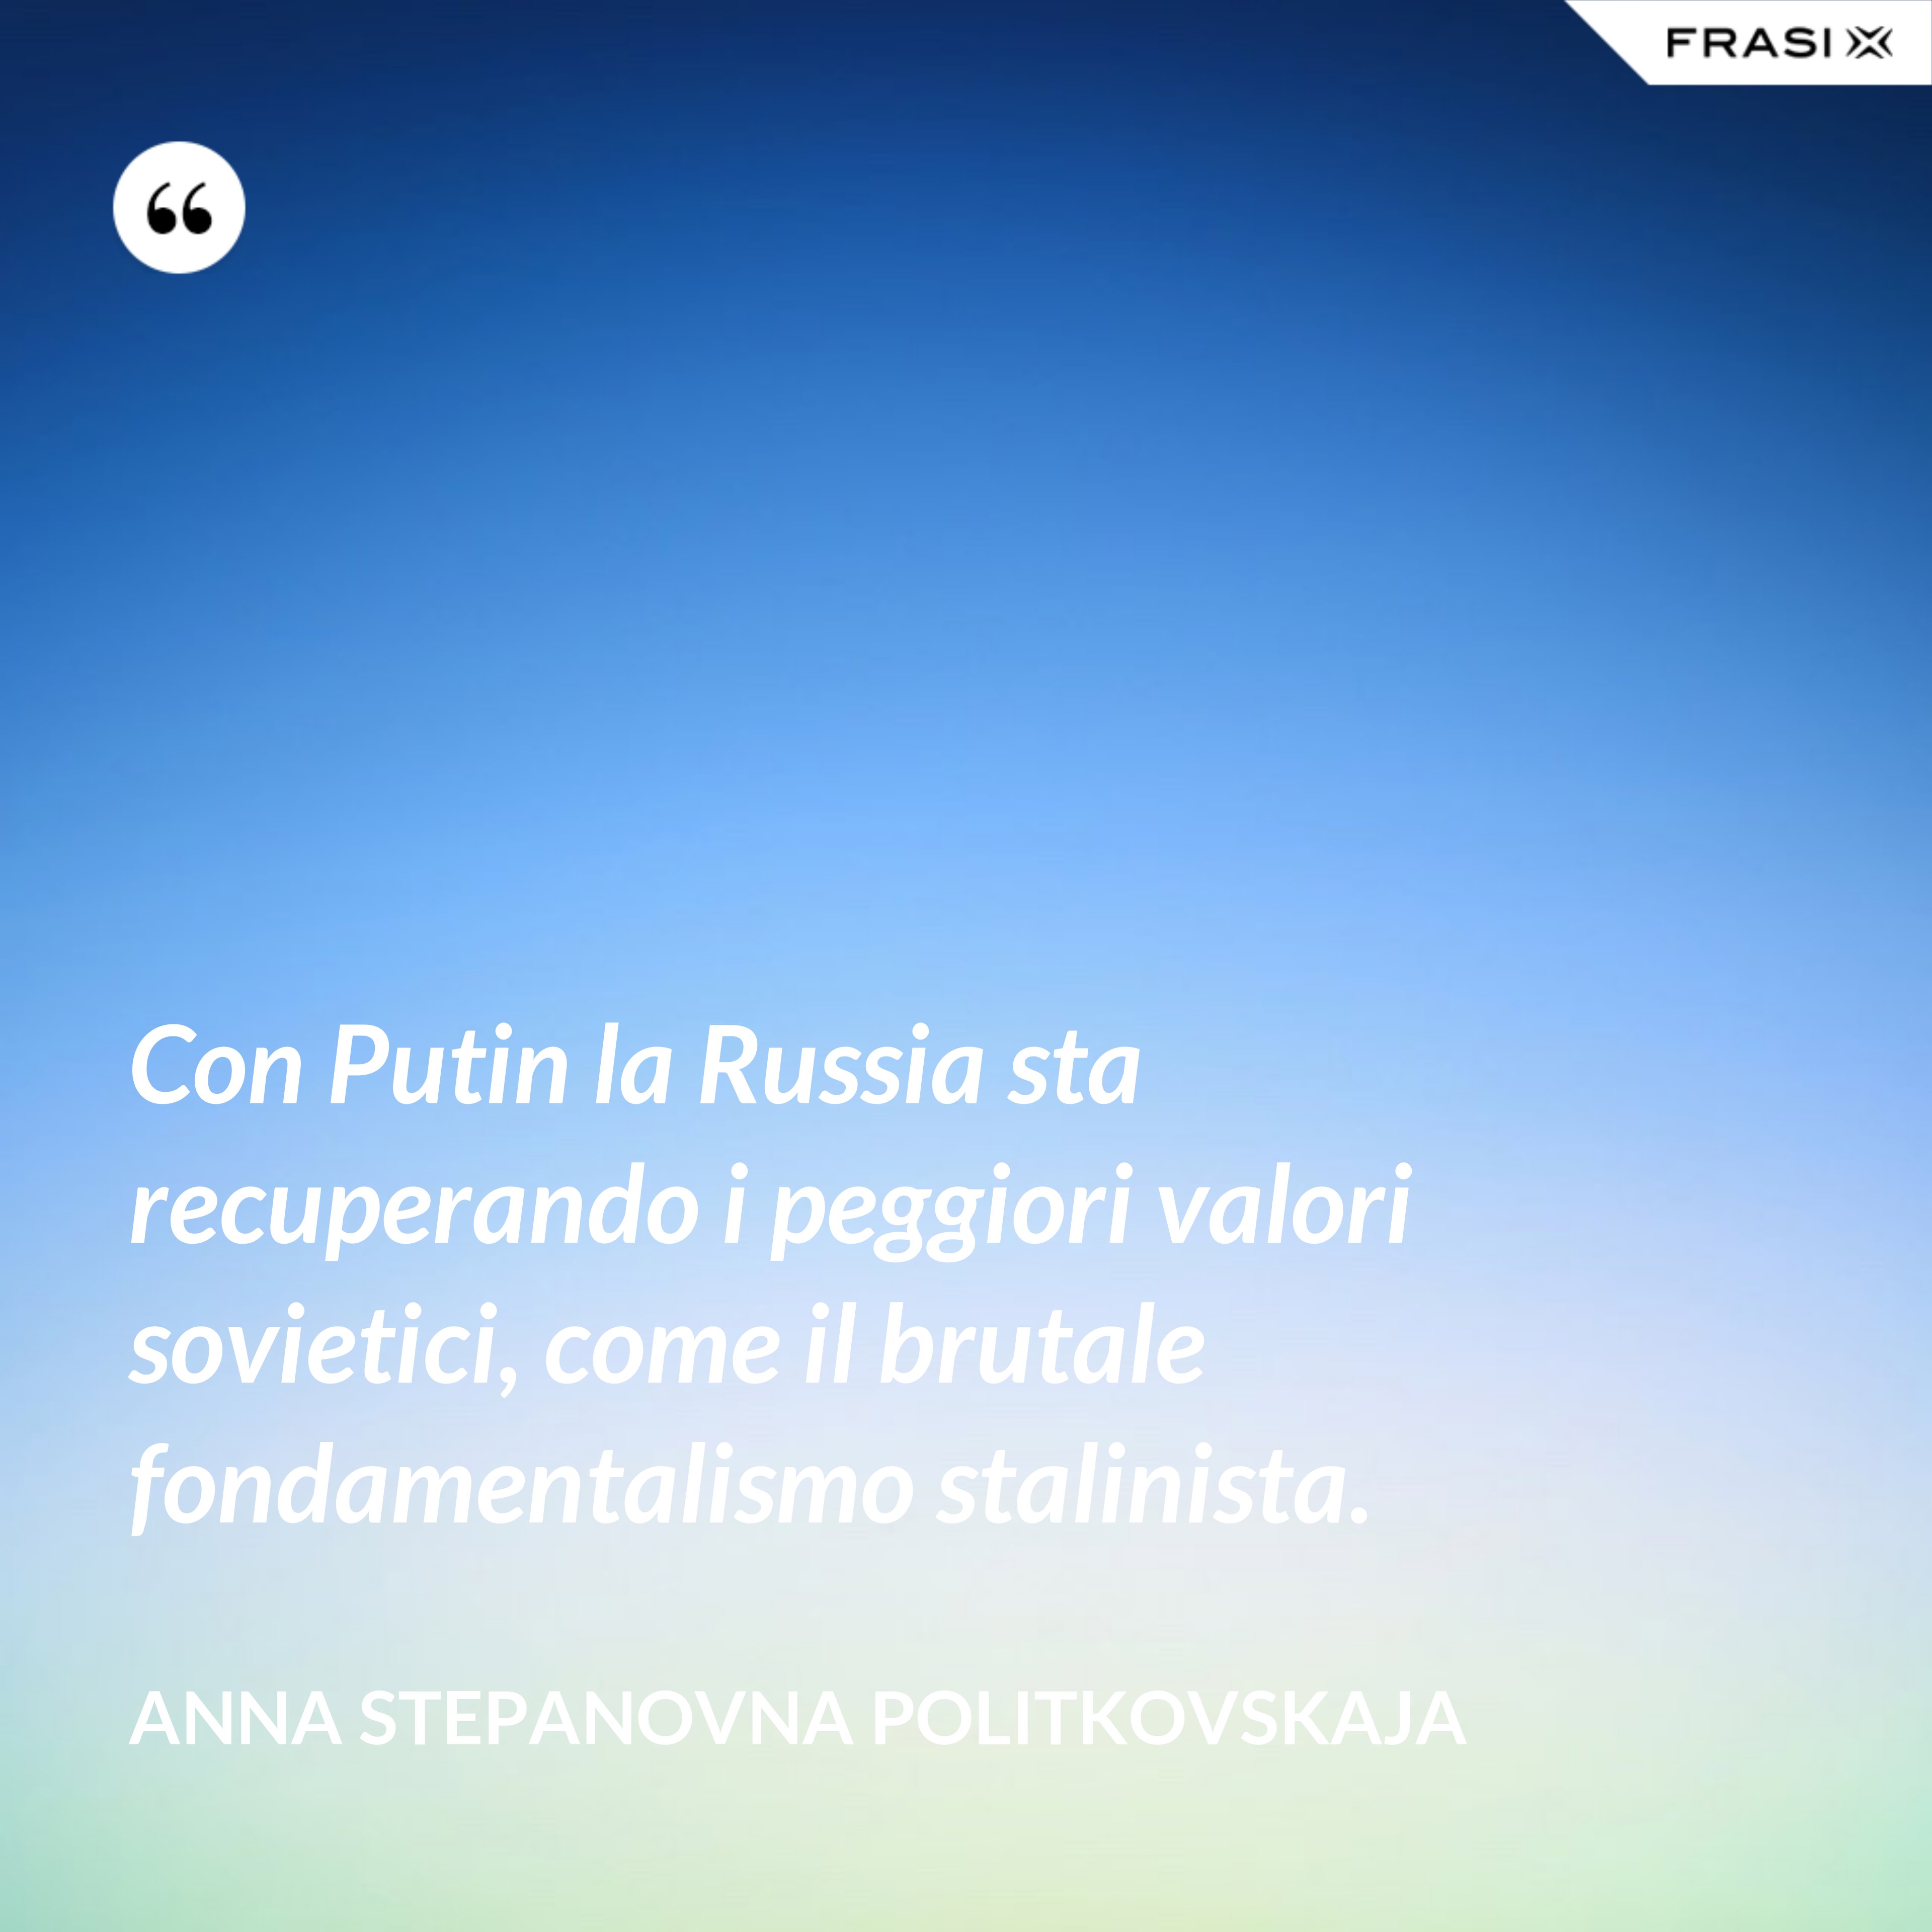 Con Putin la Russia sta recuperando i peggiori valori sovietici, come il brutale fondamentalismo stalinista. - Anna Stepanovna Politkovskaja